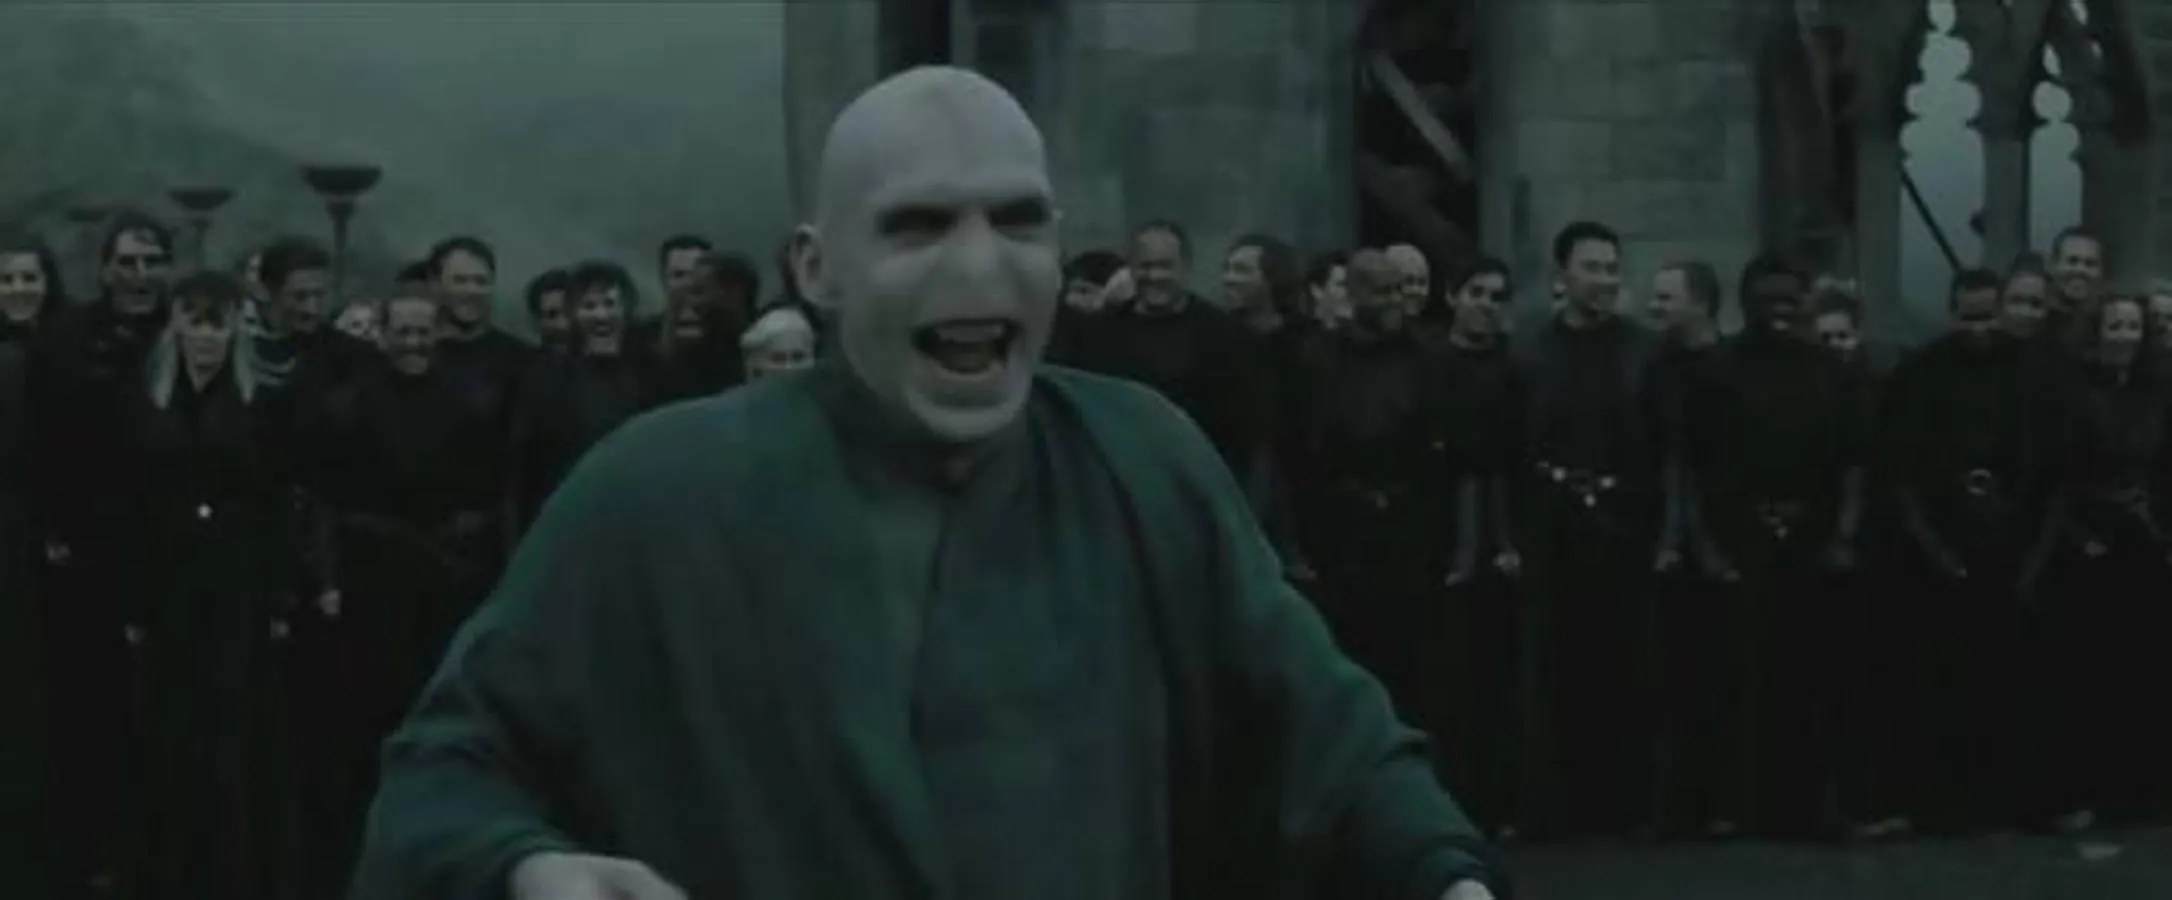 Ralph Fiennes en el papel de Voldemort